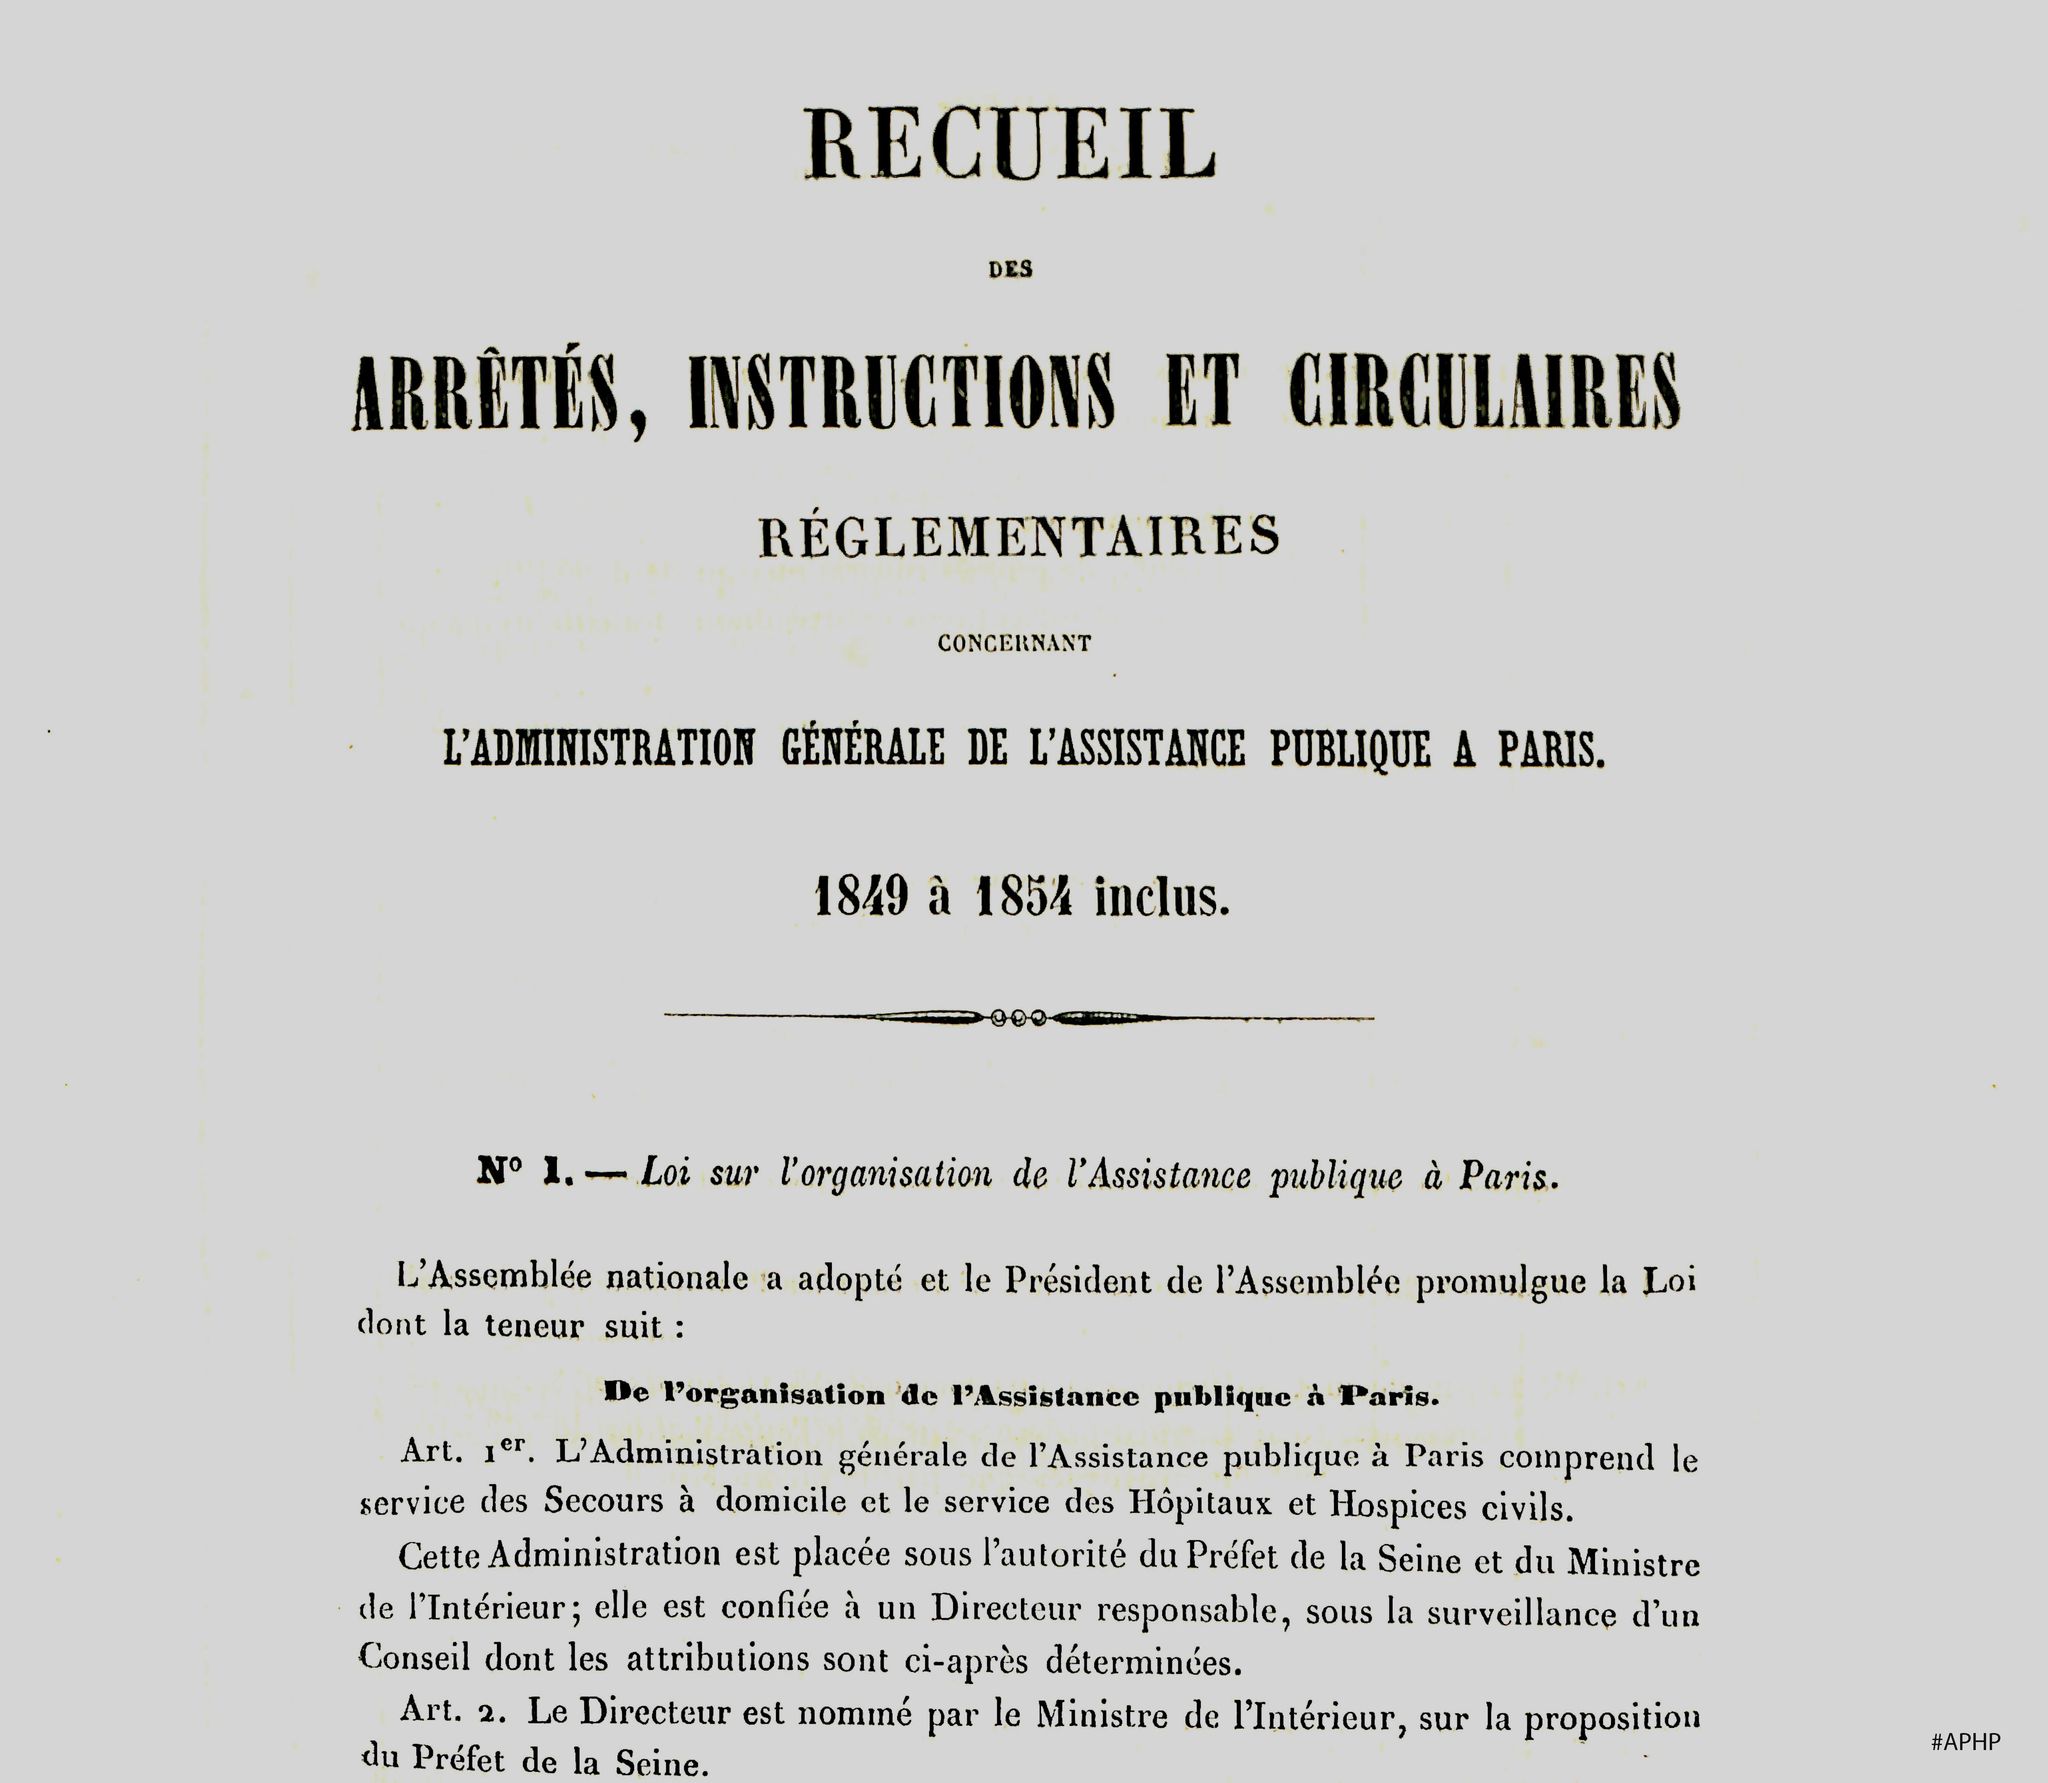 Première page du Recueil des arrêtés et circulaires, 1849 (Archives AP-HP, 1J/1).